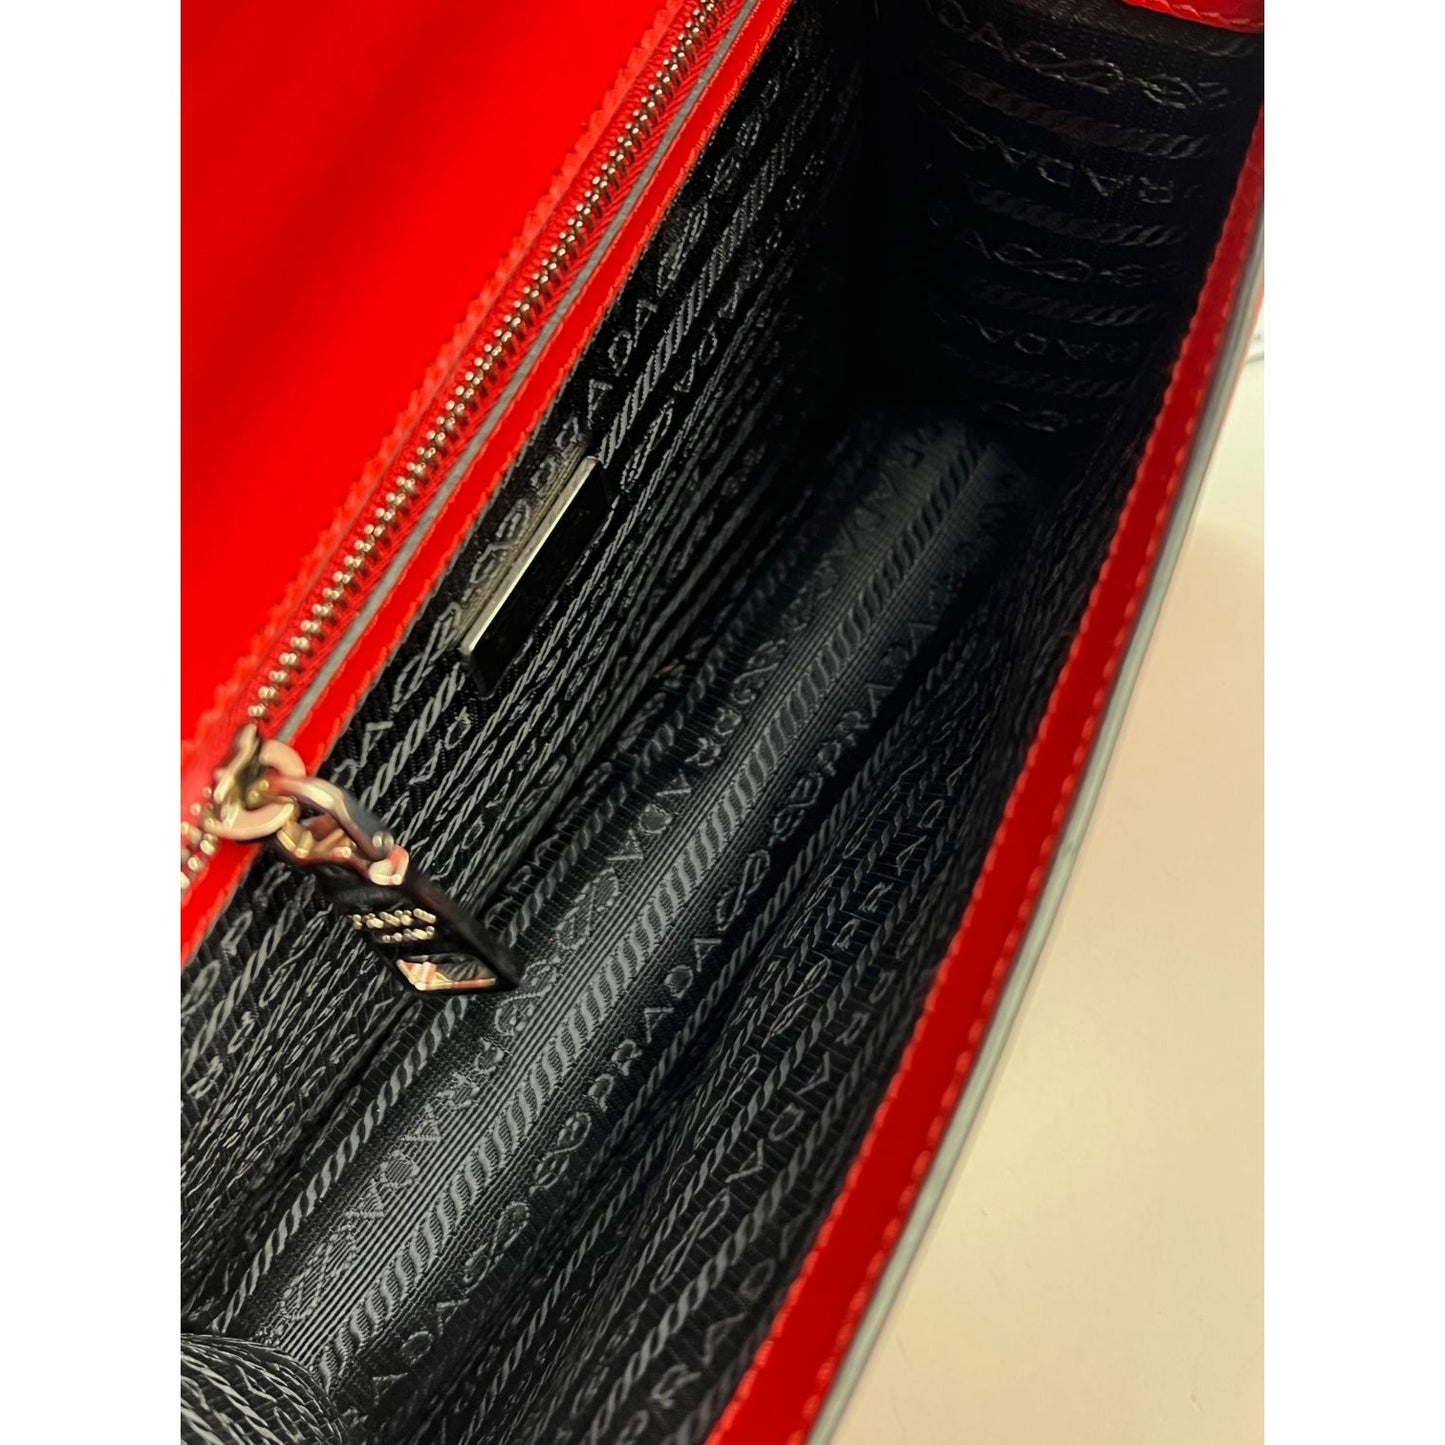 PRADA Lux Wallet Chain Bag - Dark Beige